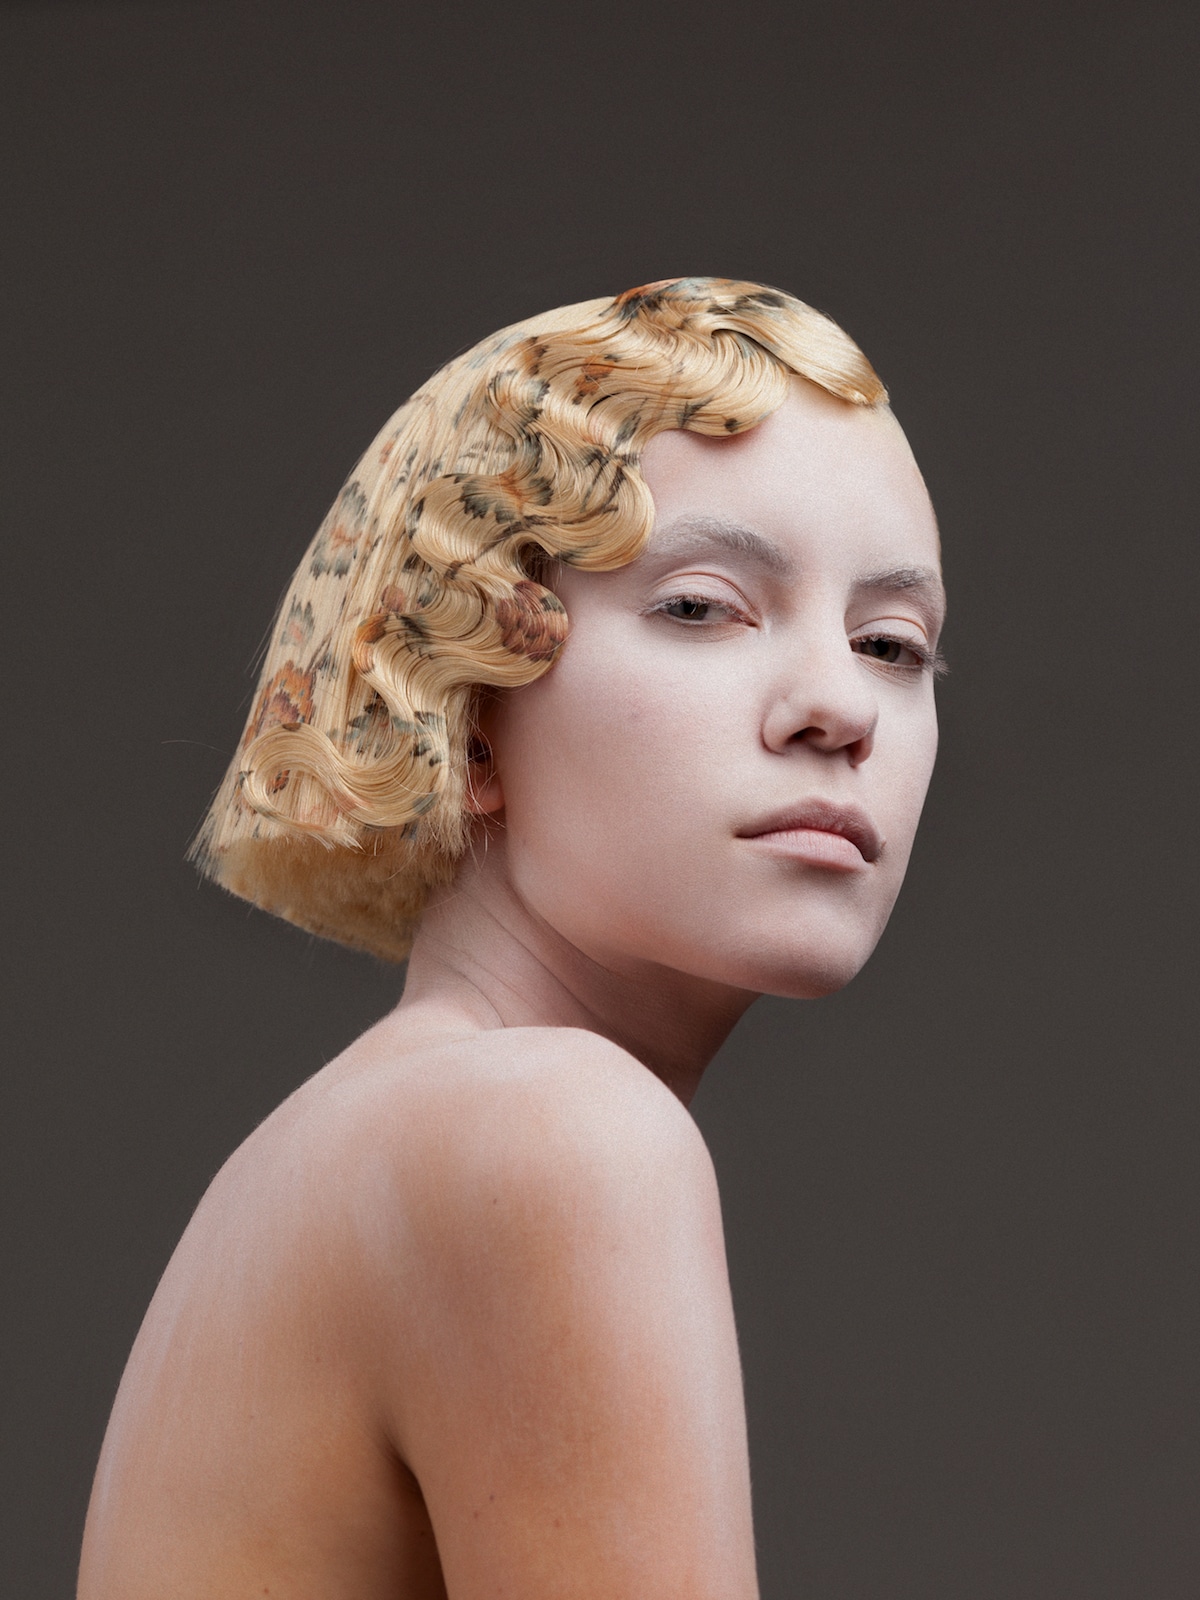 cabello con flores impresas de Alexis Ferrer